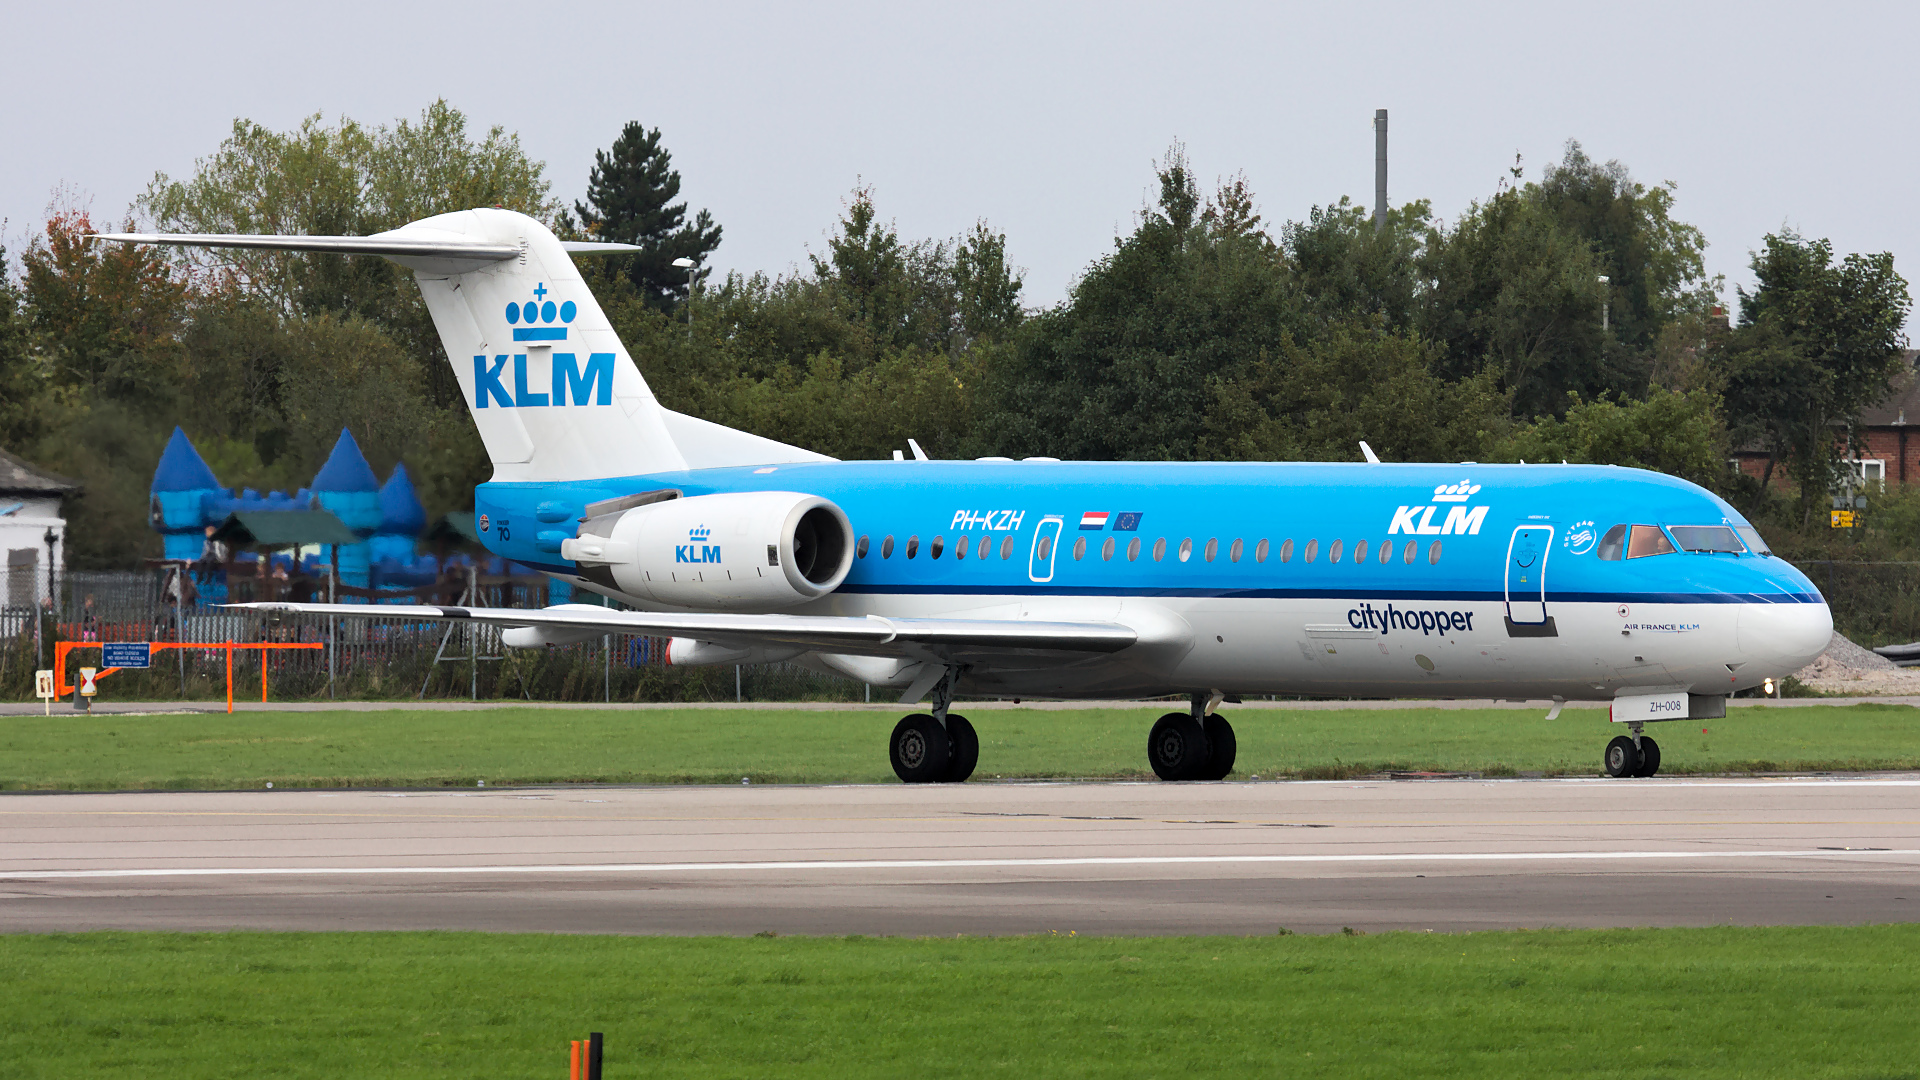 PH-KZH ✈ KLM Cityhopper Fokker 70 (F28-0070) @ Manchester